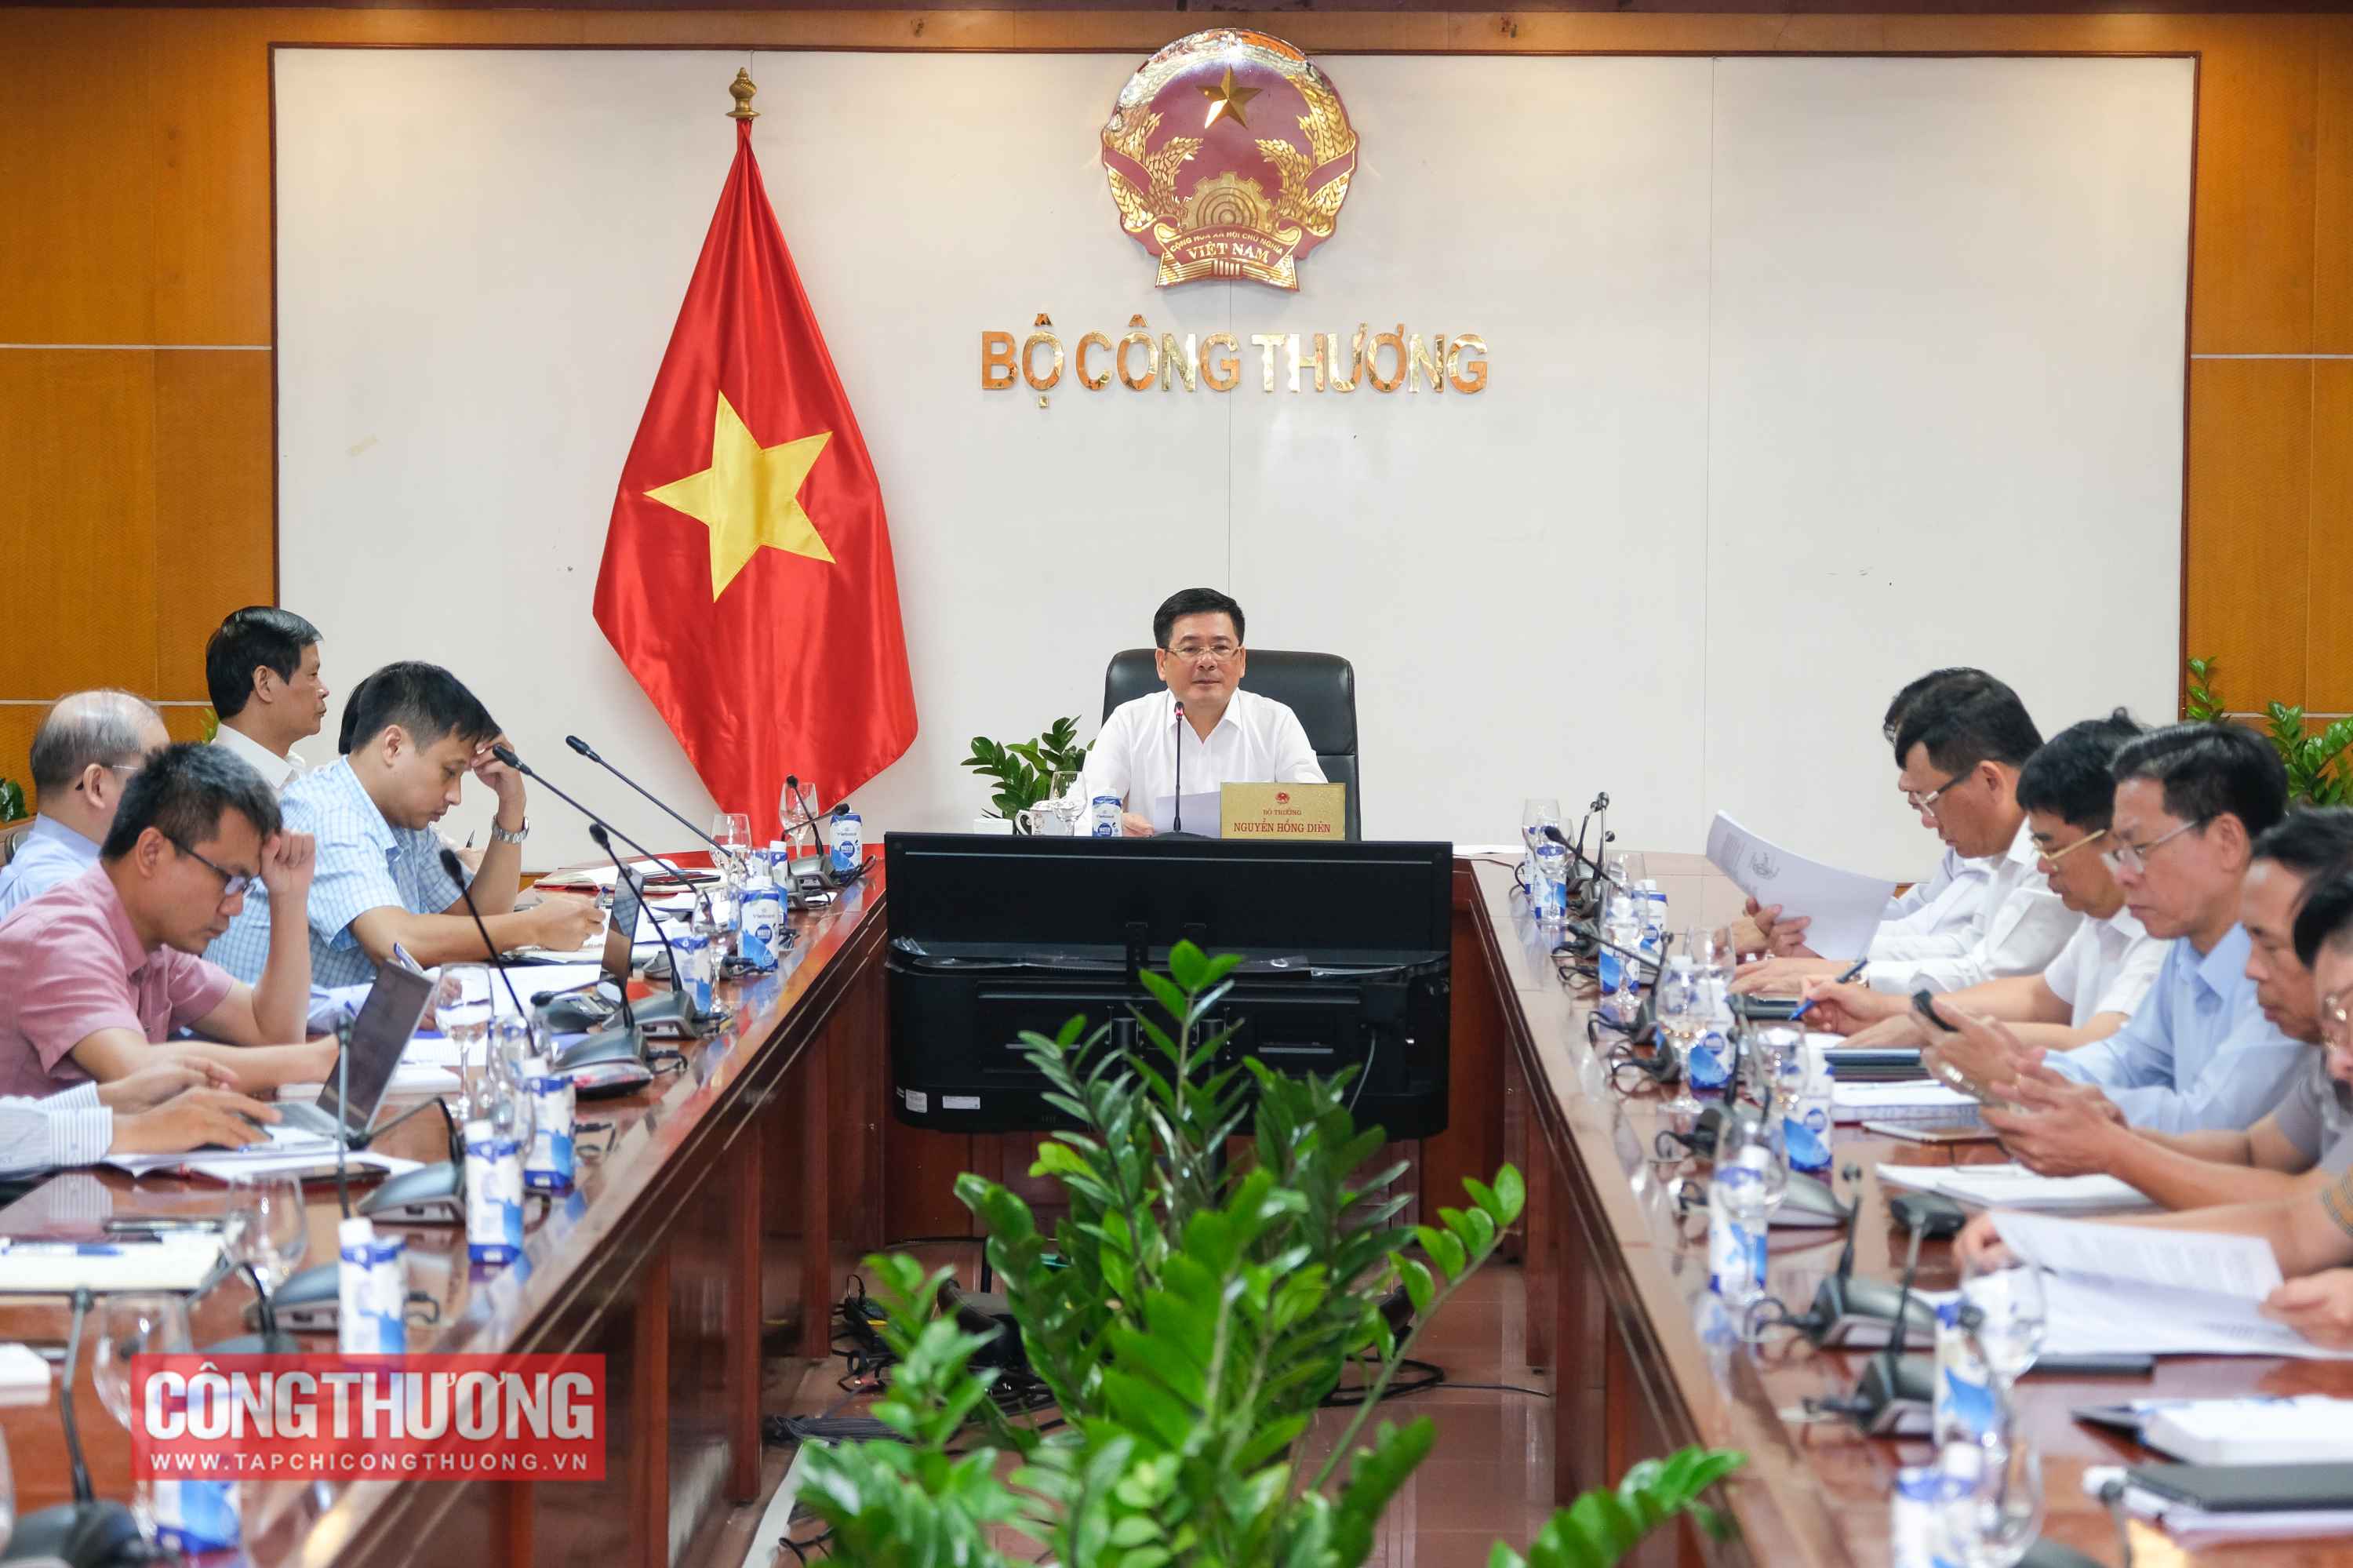 Bộ trưởng Nguyễn Hồng Diên đề nghị các bên liên quan thường xuyên báo cáo, tổng hợp tiến độ thực hiện các dự án điện khí LNG để kịp thời đôn đốc, đẩy nhanh tiến độ